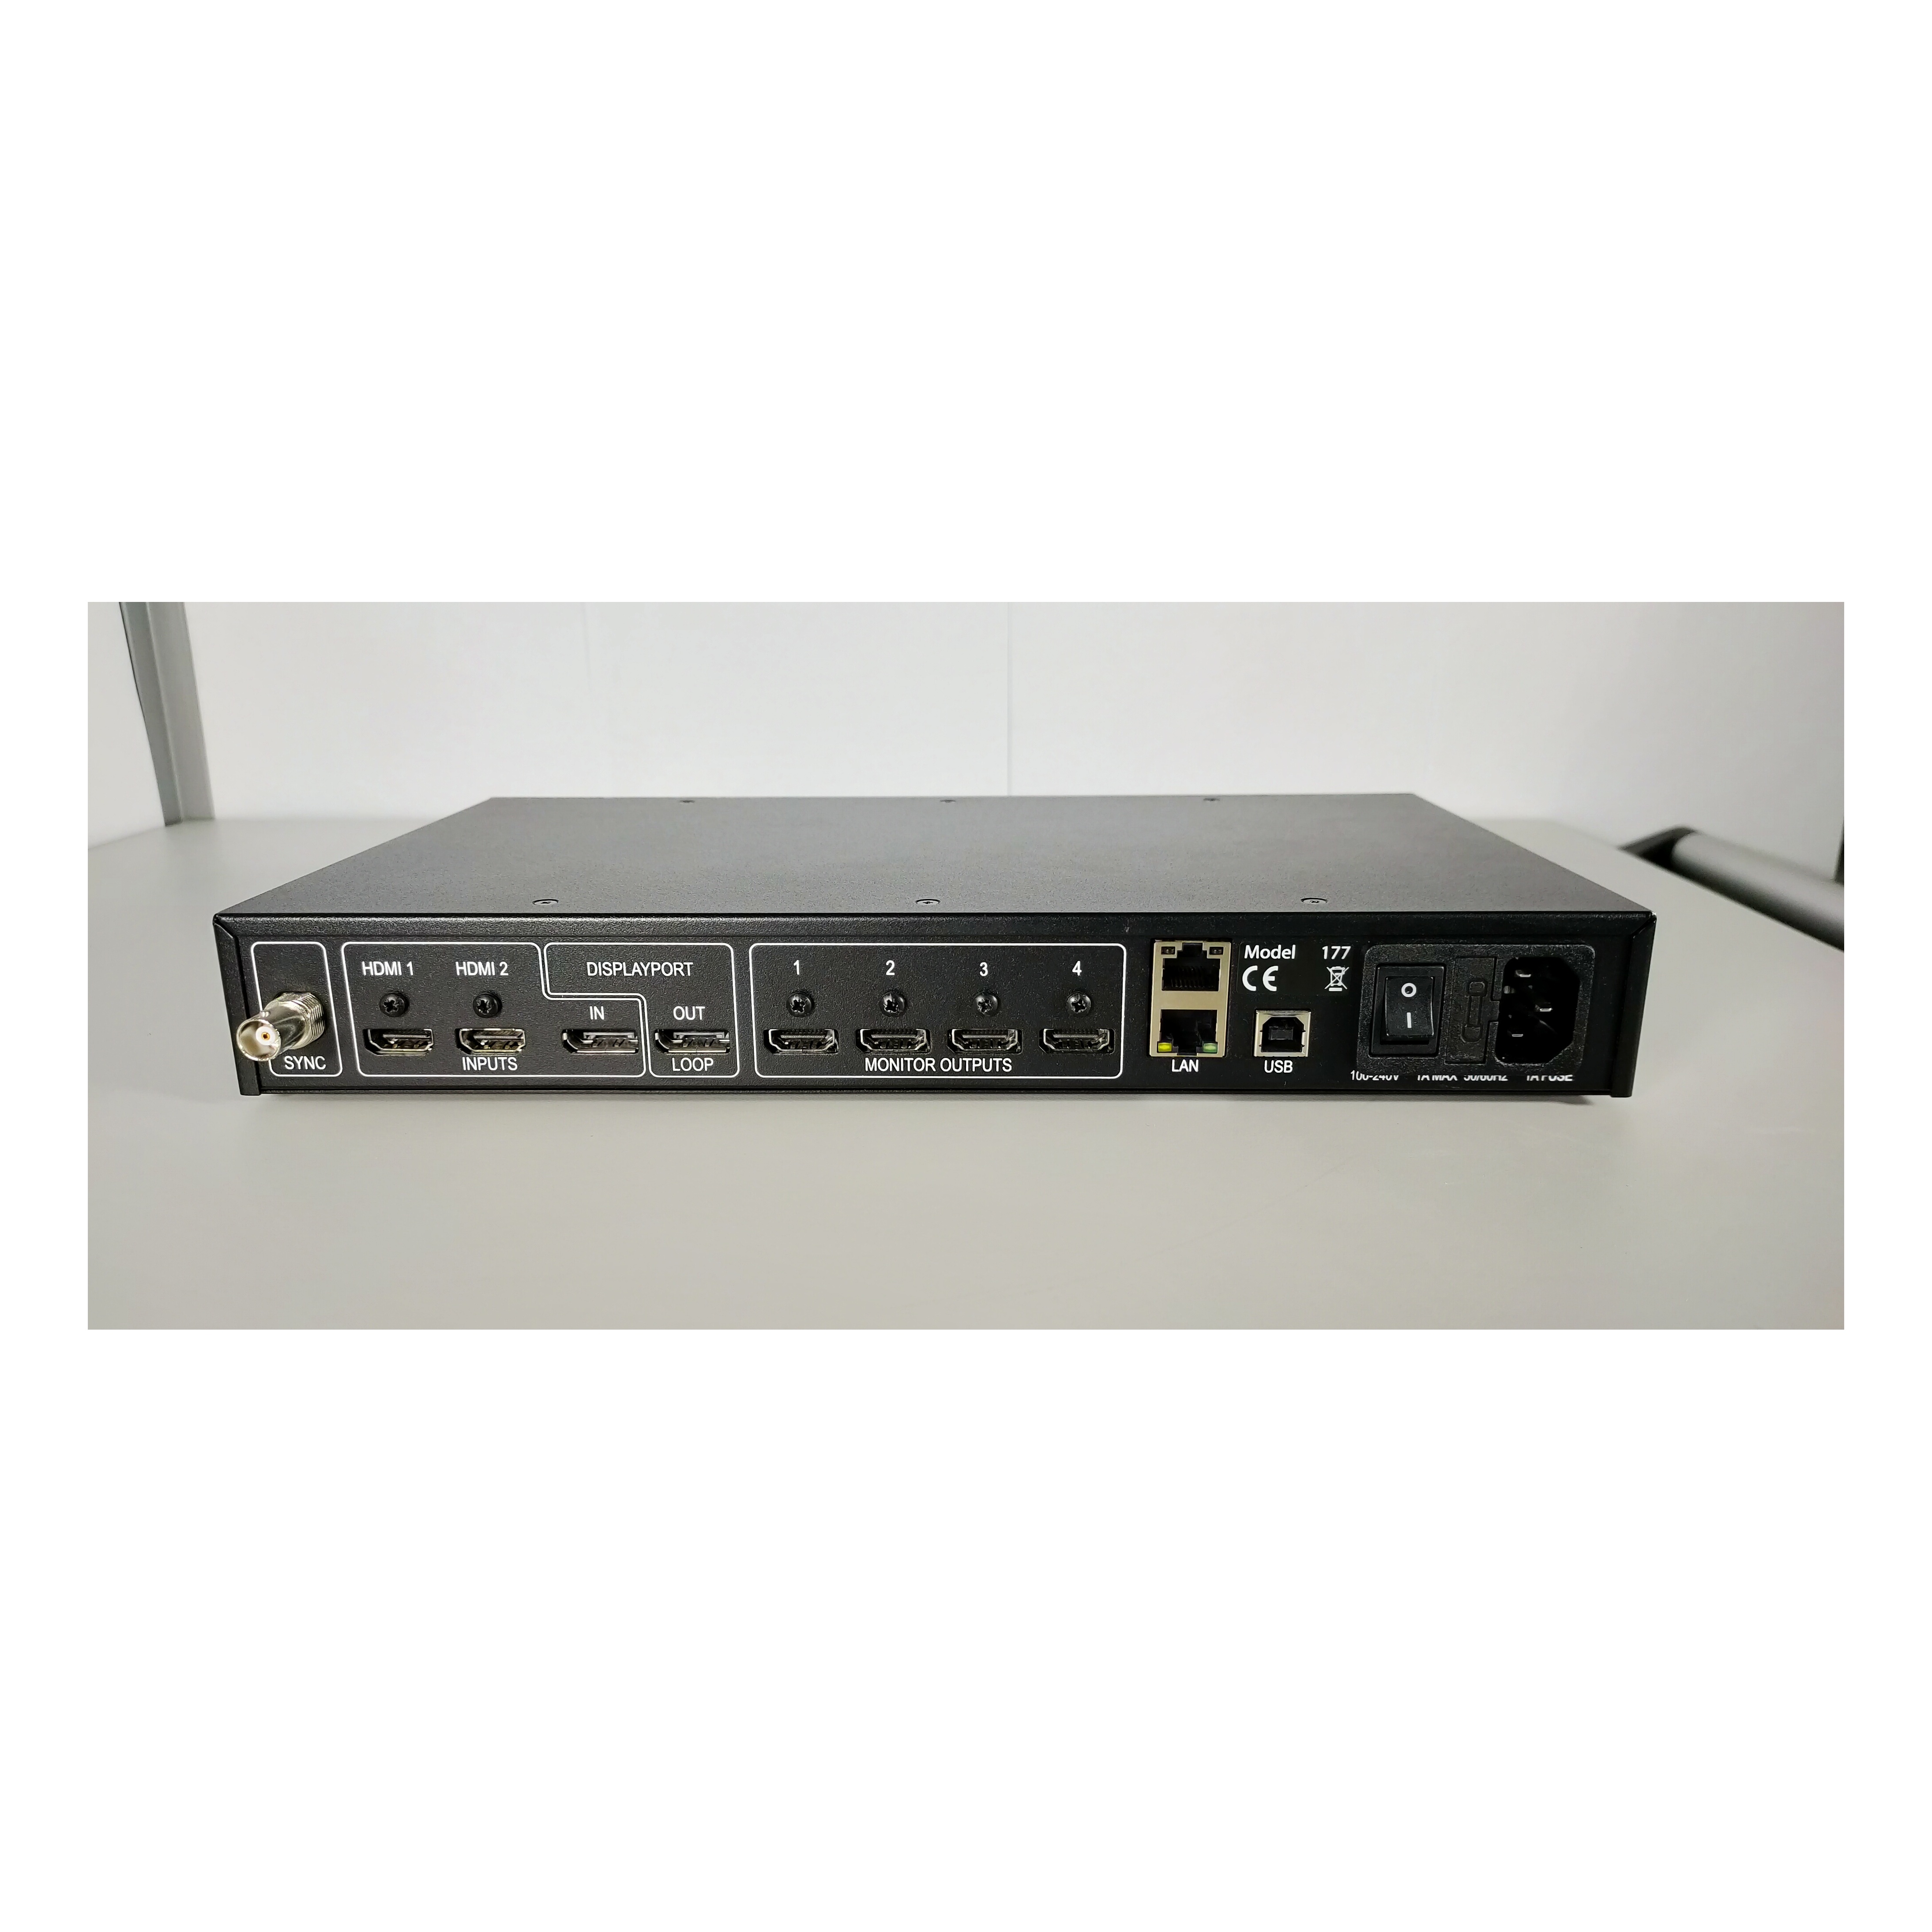 Контроллер видеостены Datapath Fx4/H 4K display wall controller w/HDCP - HDMI outputs (Б/У оборудование, незначительные царапины, сколы)